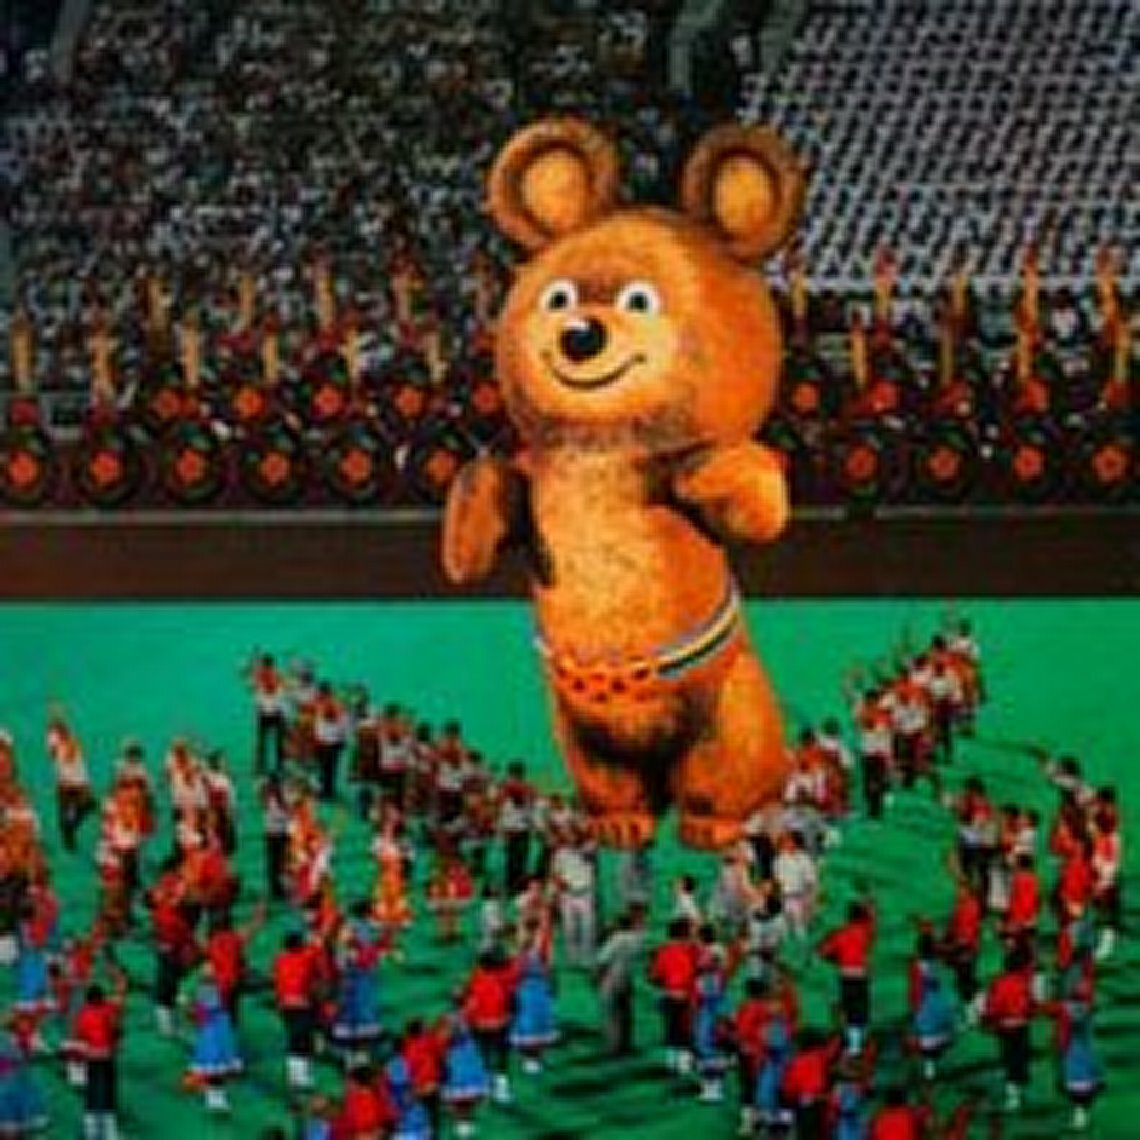 До свидания наш ласковый миша. Закрытие олимпиады 80. Церемония закрытия олимпиады 80 в Москве. Гостям олимпиады - 80.